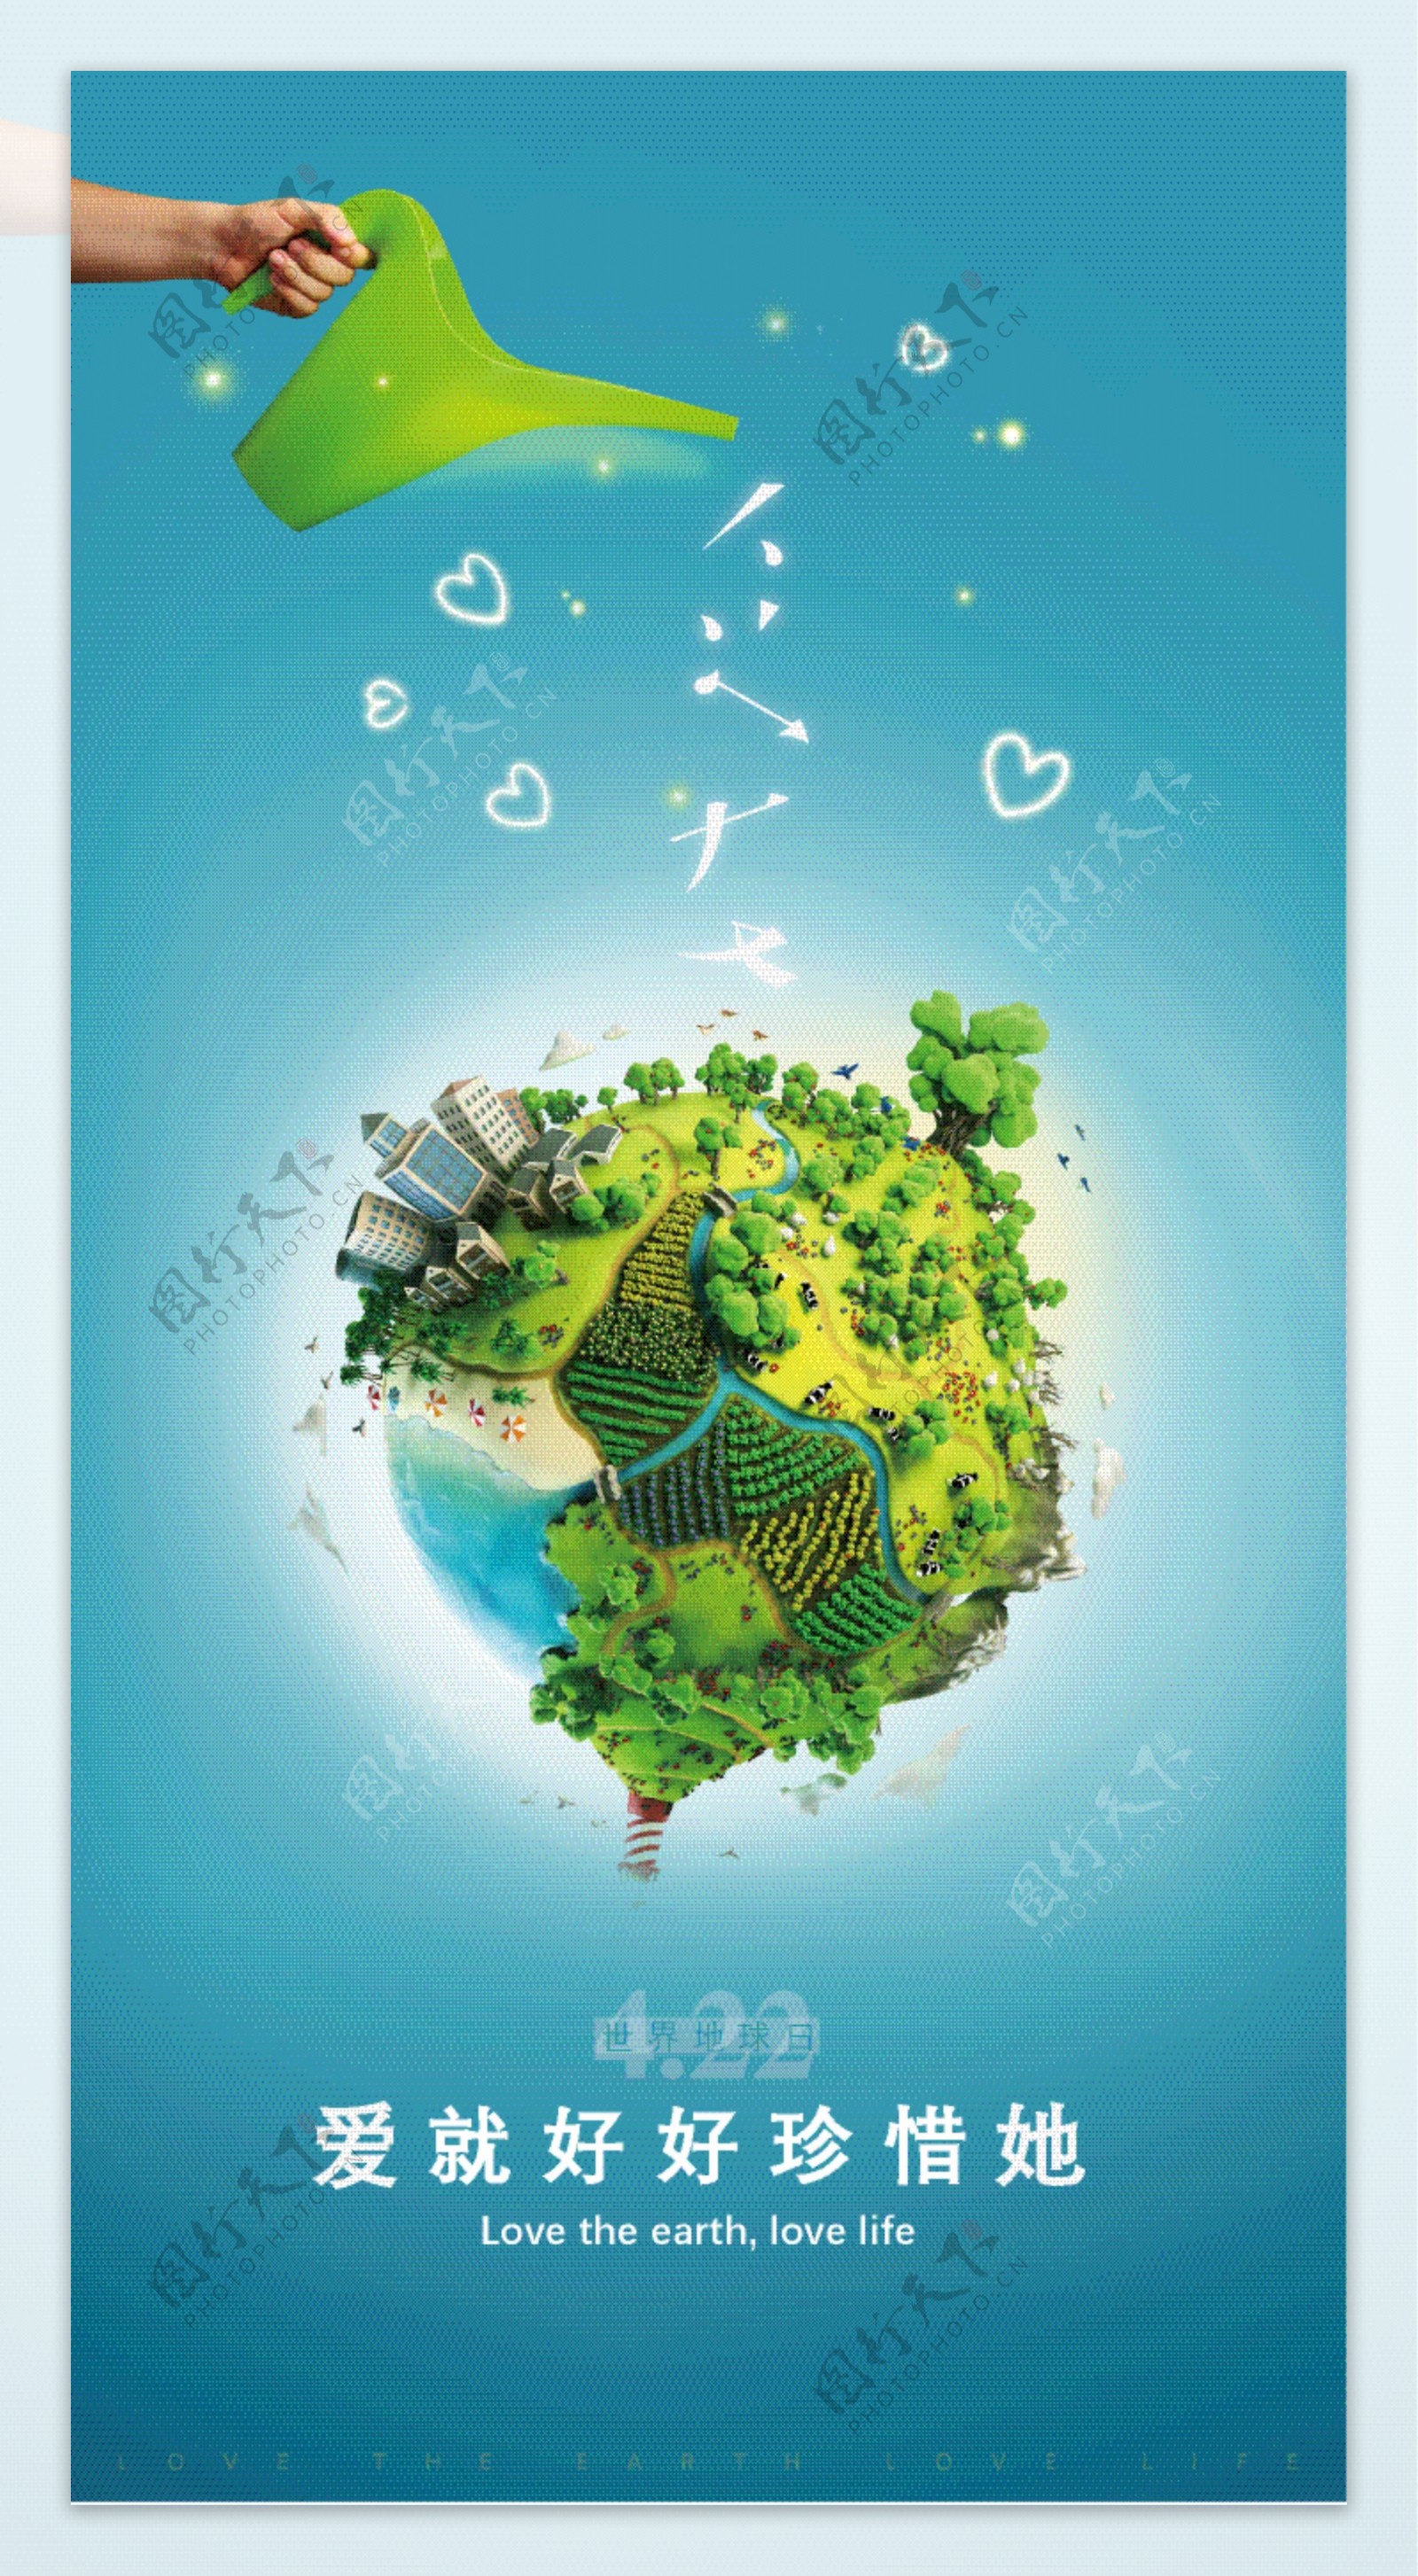 地球爱护地球灌溉爱水壶